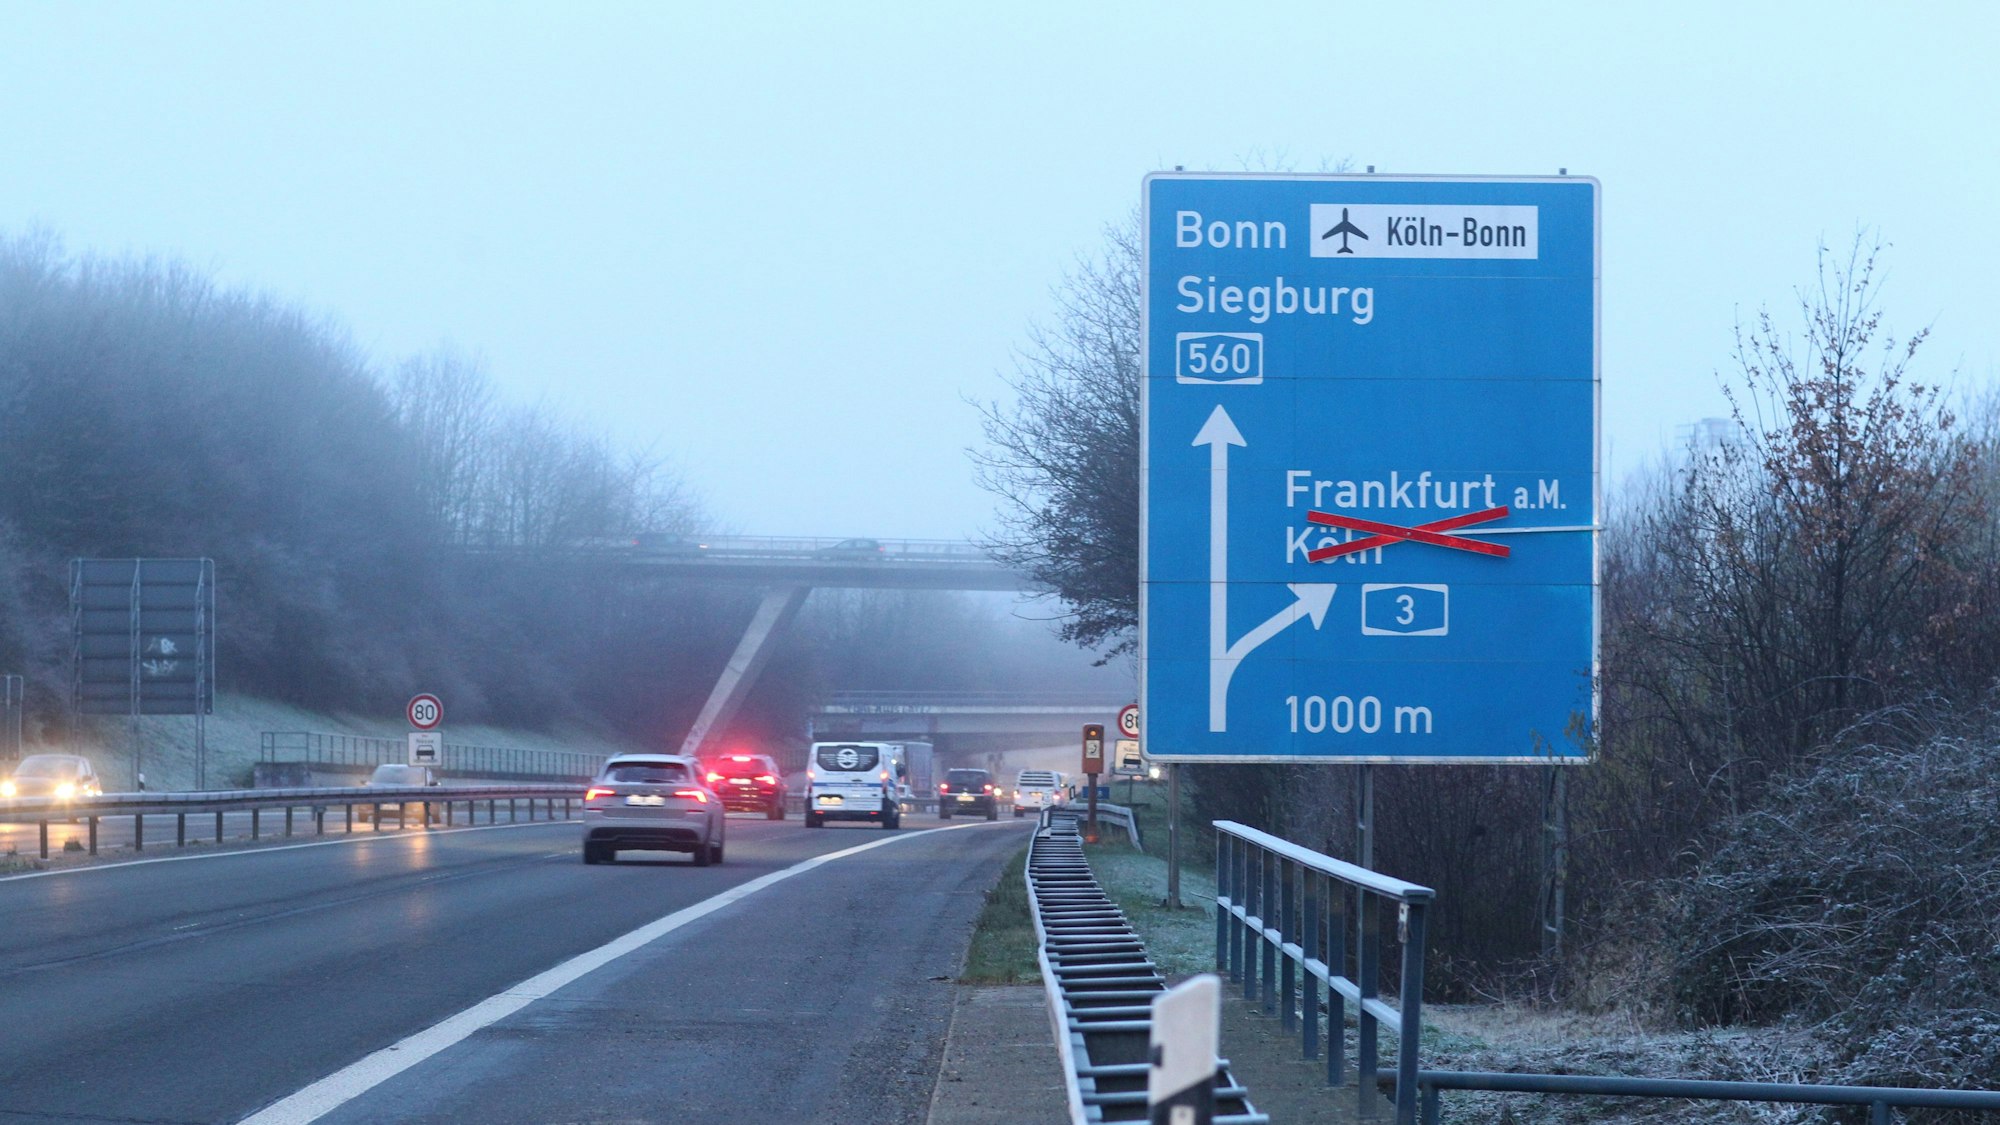 Autos bremsen auf einer winterlichen Autobahn, die Rücklichter leuchten. Im Vordergrund steht ein blaues Schild, das die Fahrspur der A560 Richtung Bonn und Siegburg anzeigt. Der Pfeil Richtung Köln ist mit einem Kreuz durchgestrichen.